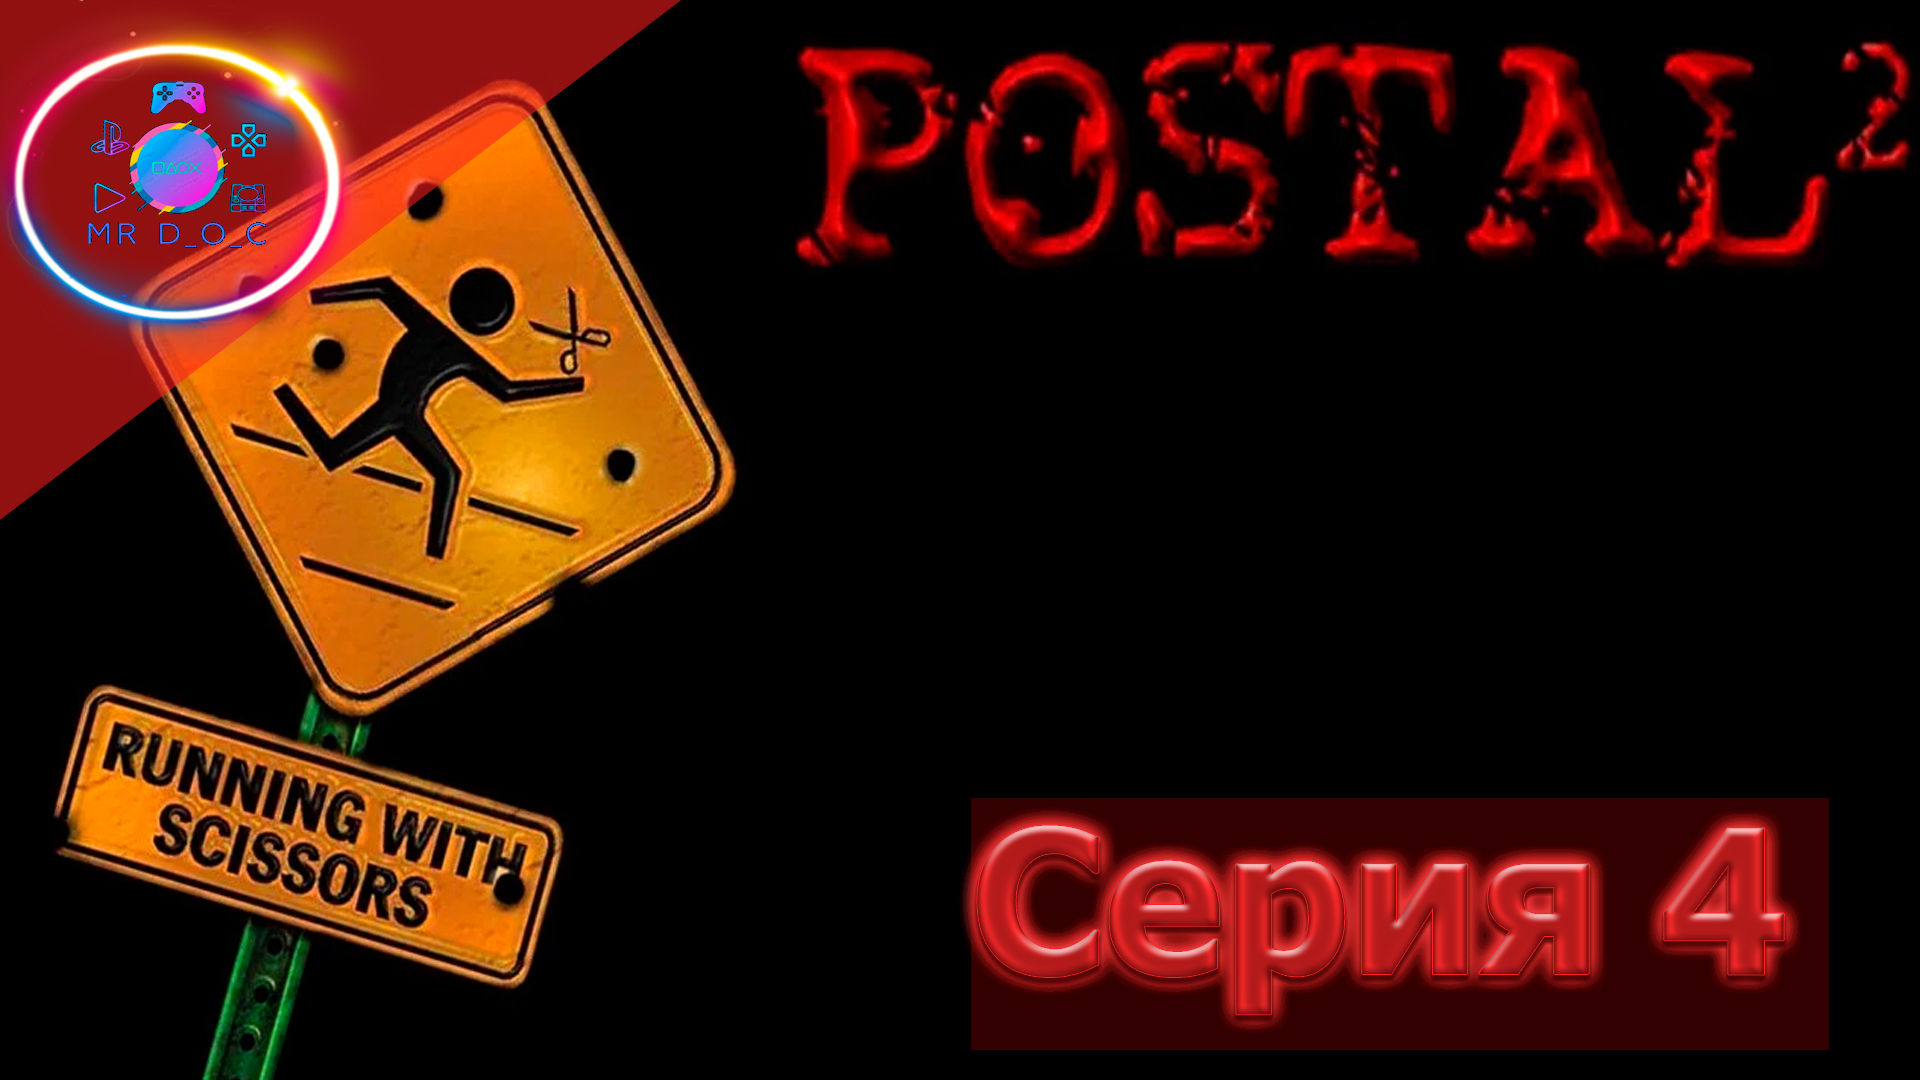 Postal 2 awp delete review без торрента фото 50